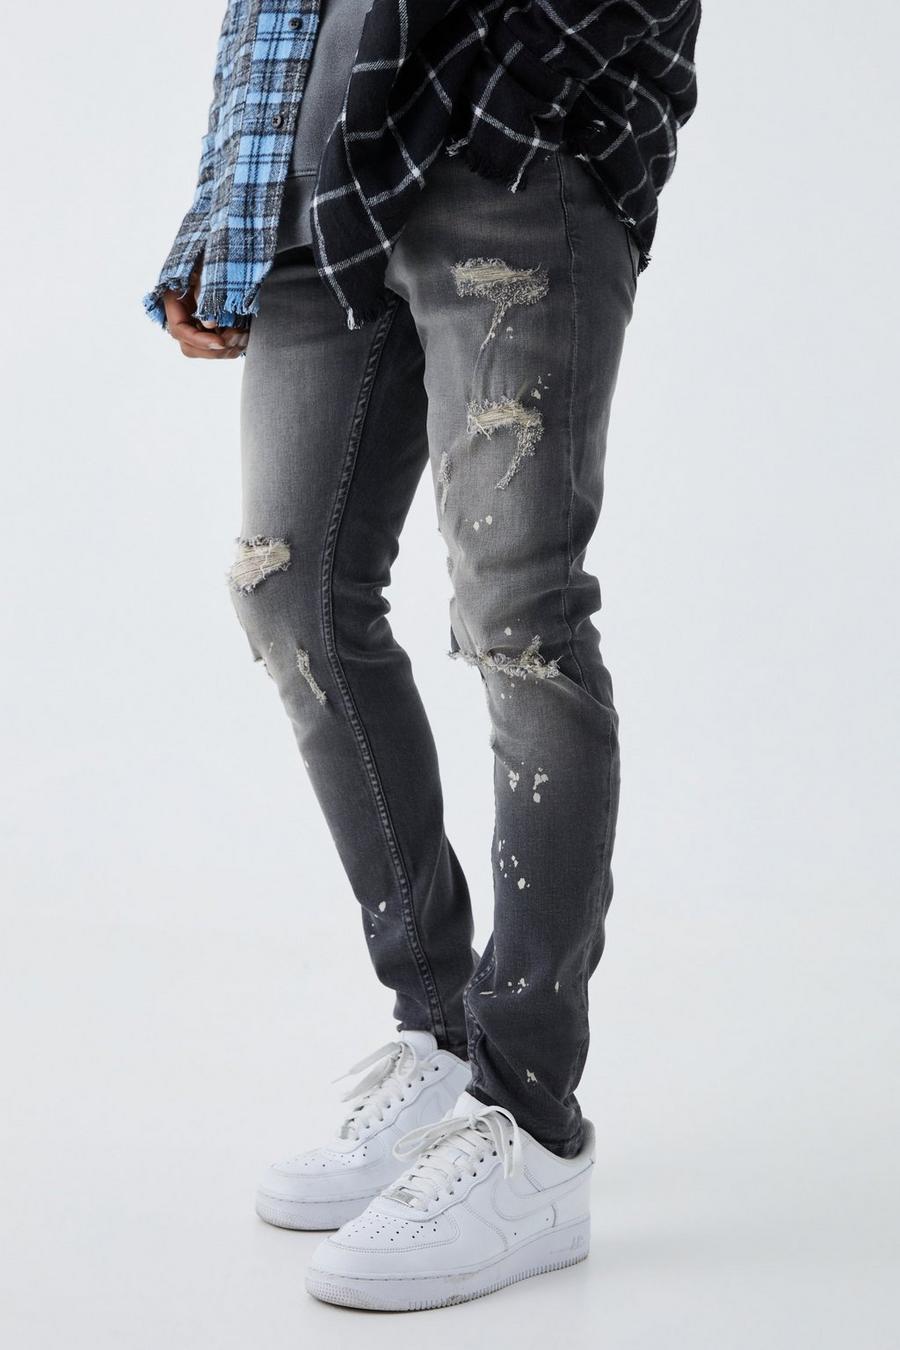 Jeans Skinny Fit Stretch candeggiati con strappi sul ginocchio, Grey